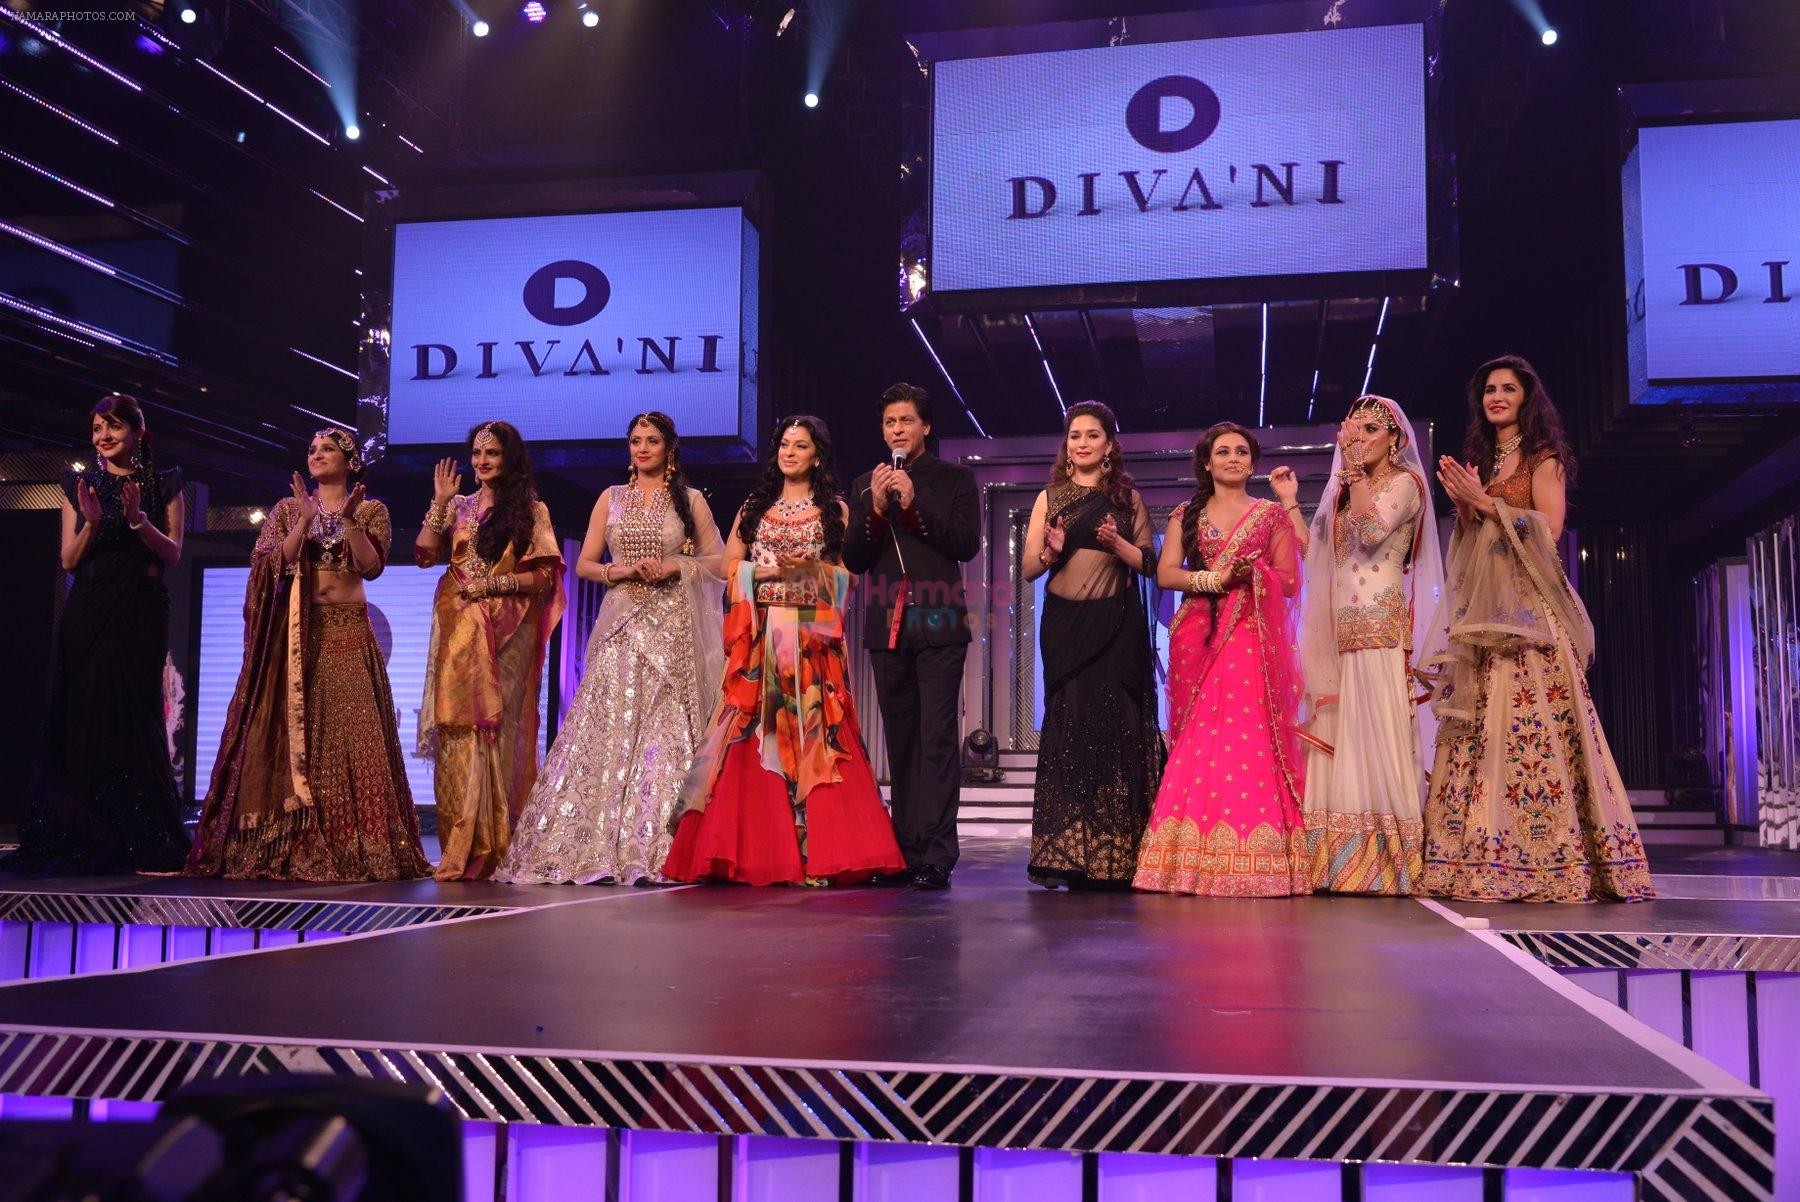 Anushka Sharma, Parineeti Chopra, Rekha, Sridevi, Juhi Chawla, Shahrukh Khan, Madhuri Dixit, Rani Mukerji, Preity Zinta, Katrina Kaif at the launch of Diva_ni in Mumbai on 27th Sept 2013